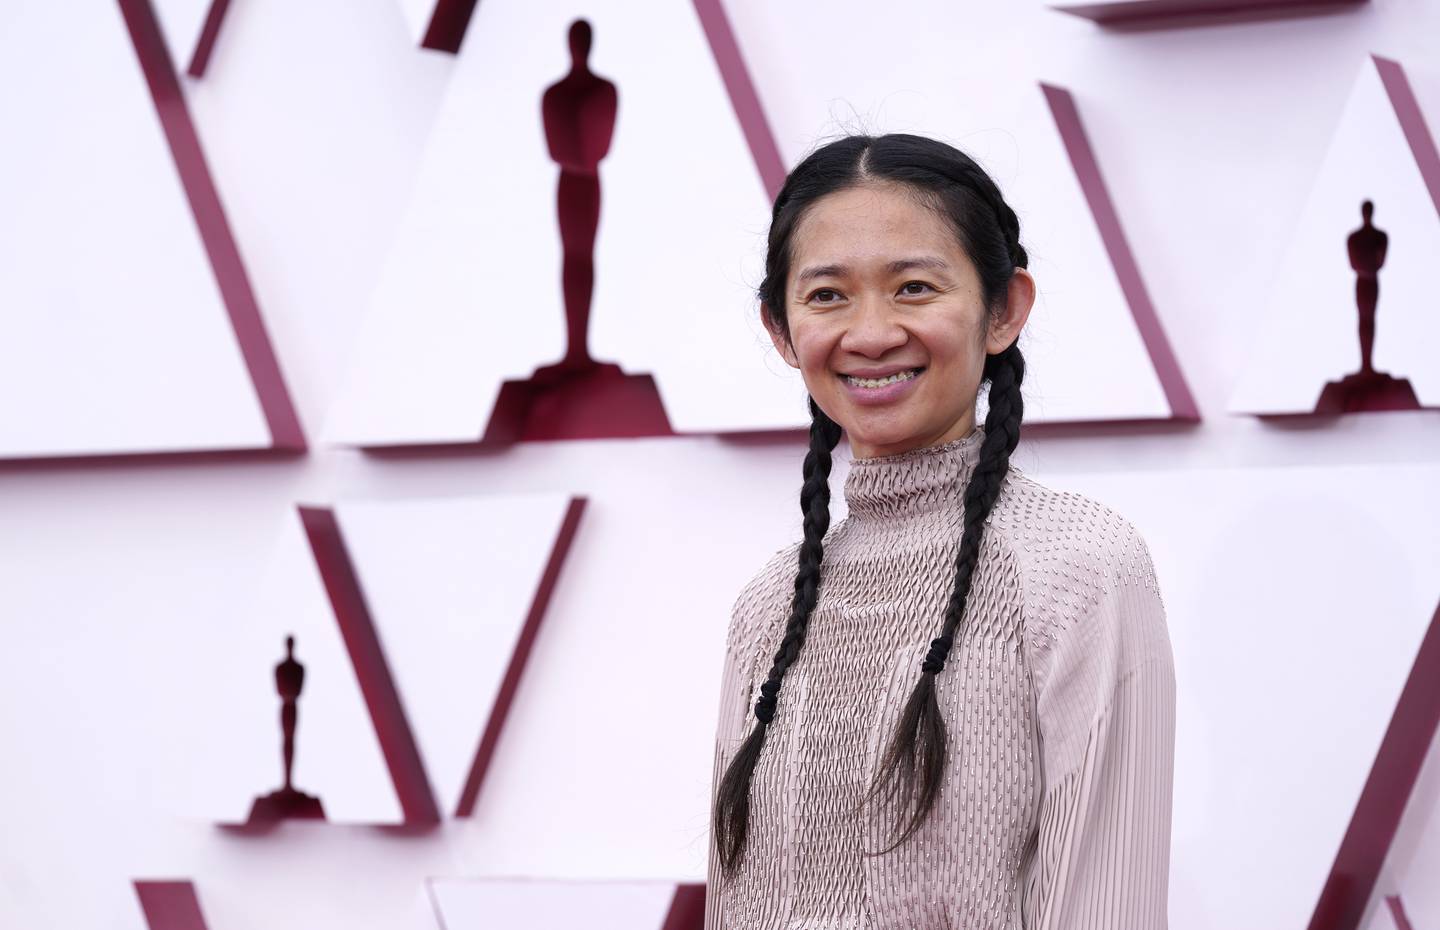 Chloé Zhao inngår i Venezia-juryen når festivalen drar i gang i september. Foto: AP